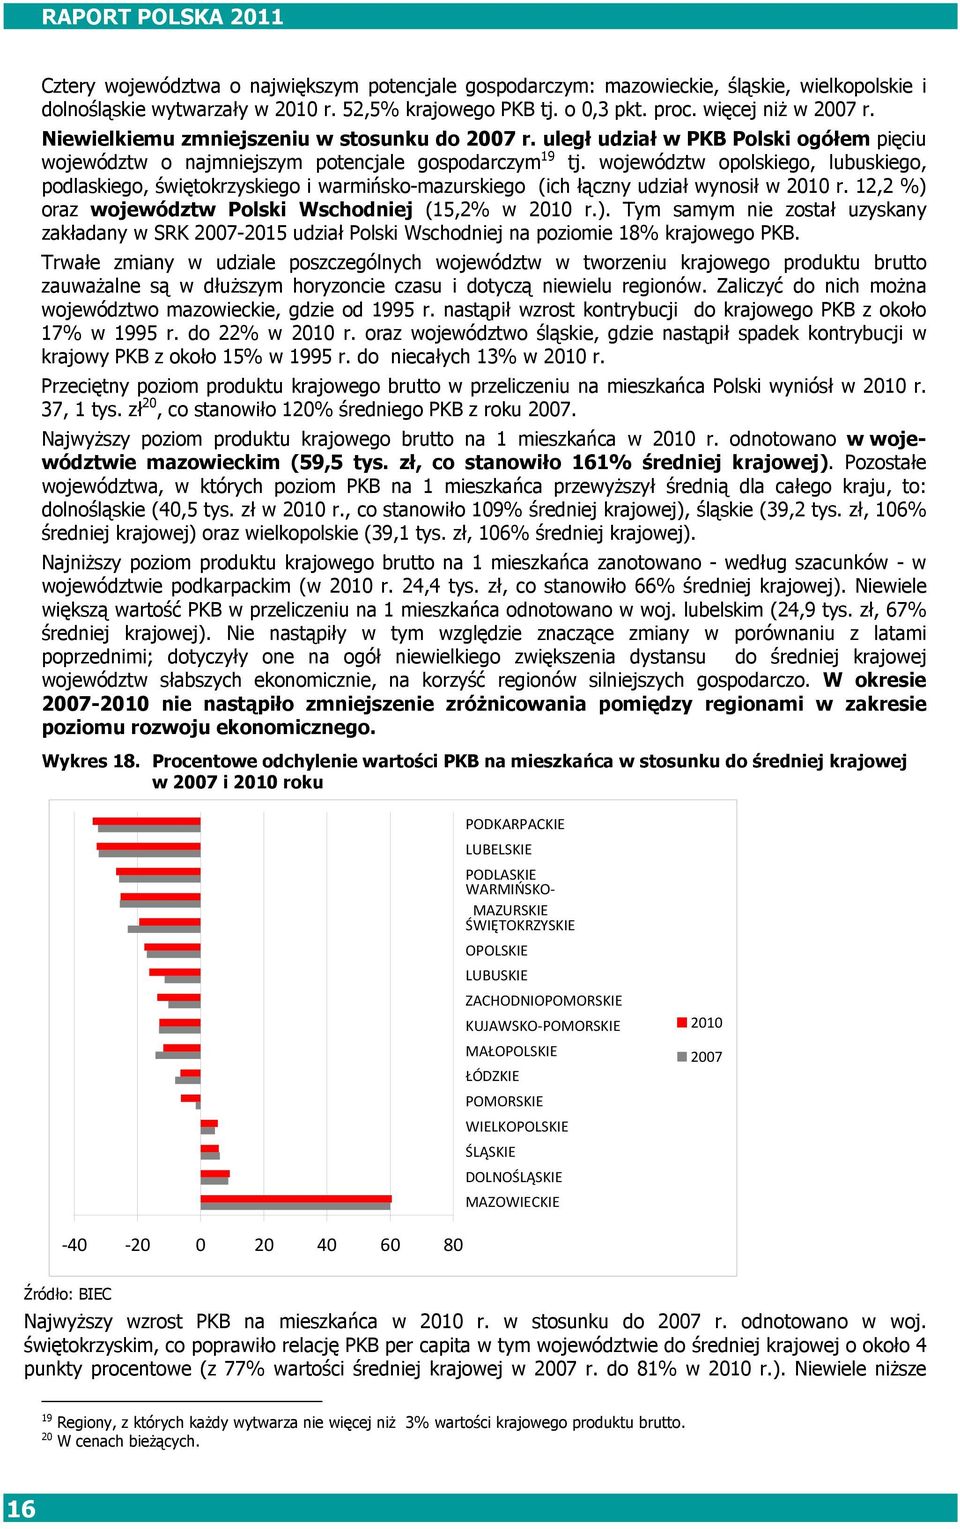 województw opolskiego, lubuskiego, podlaskiego, świętokrzyskiego i warmińsko-mazurskiego (ich łączny udział wynosił w 2010 r. 12,2 %) 